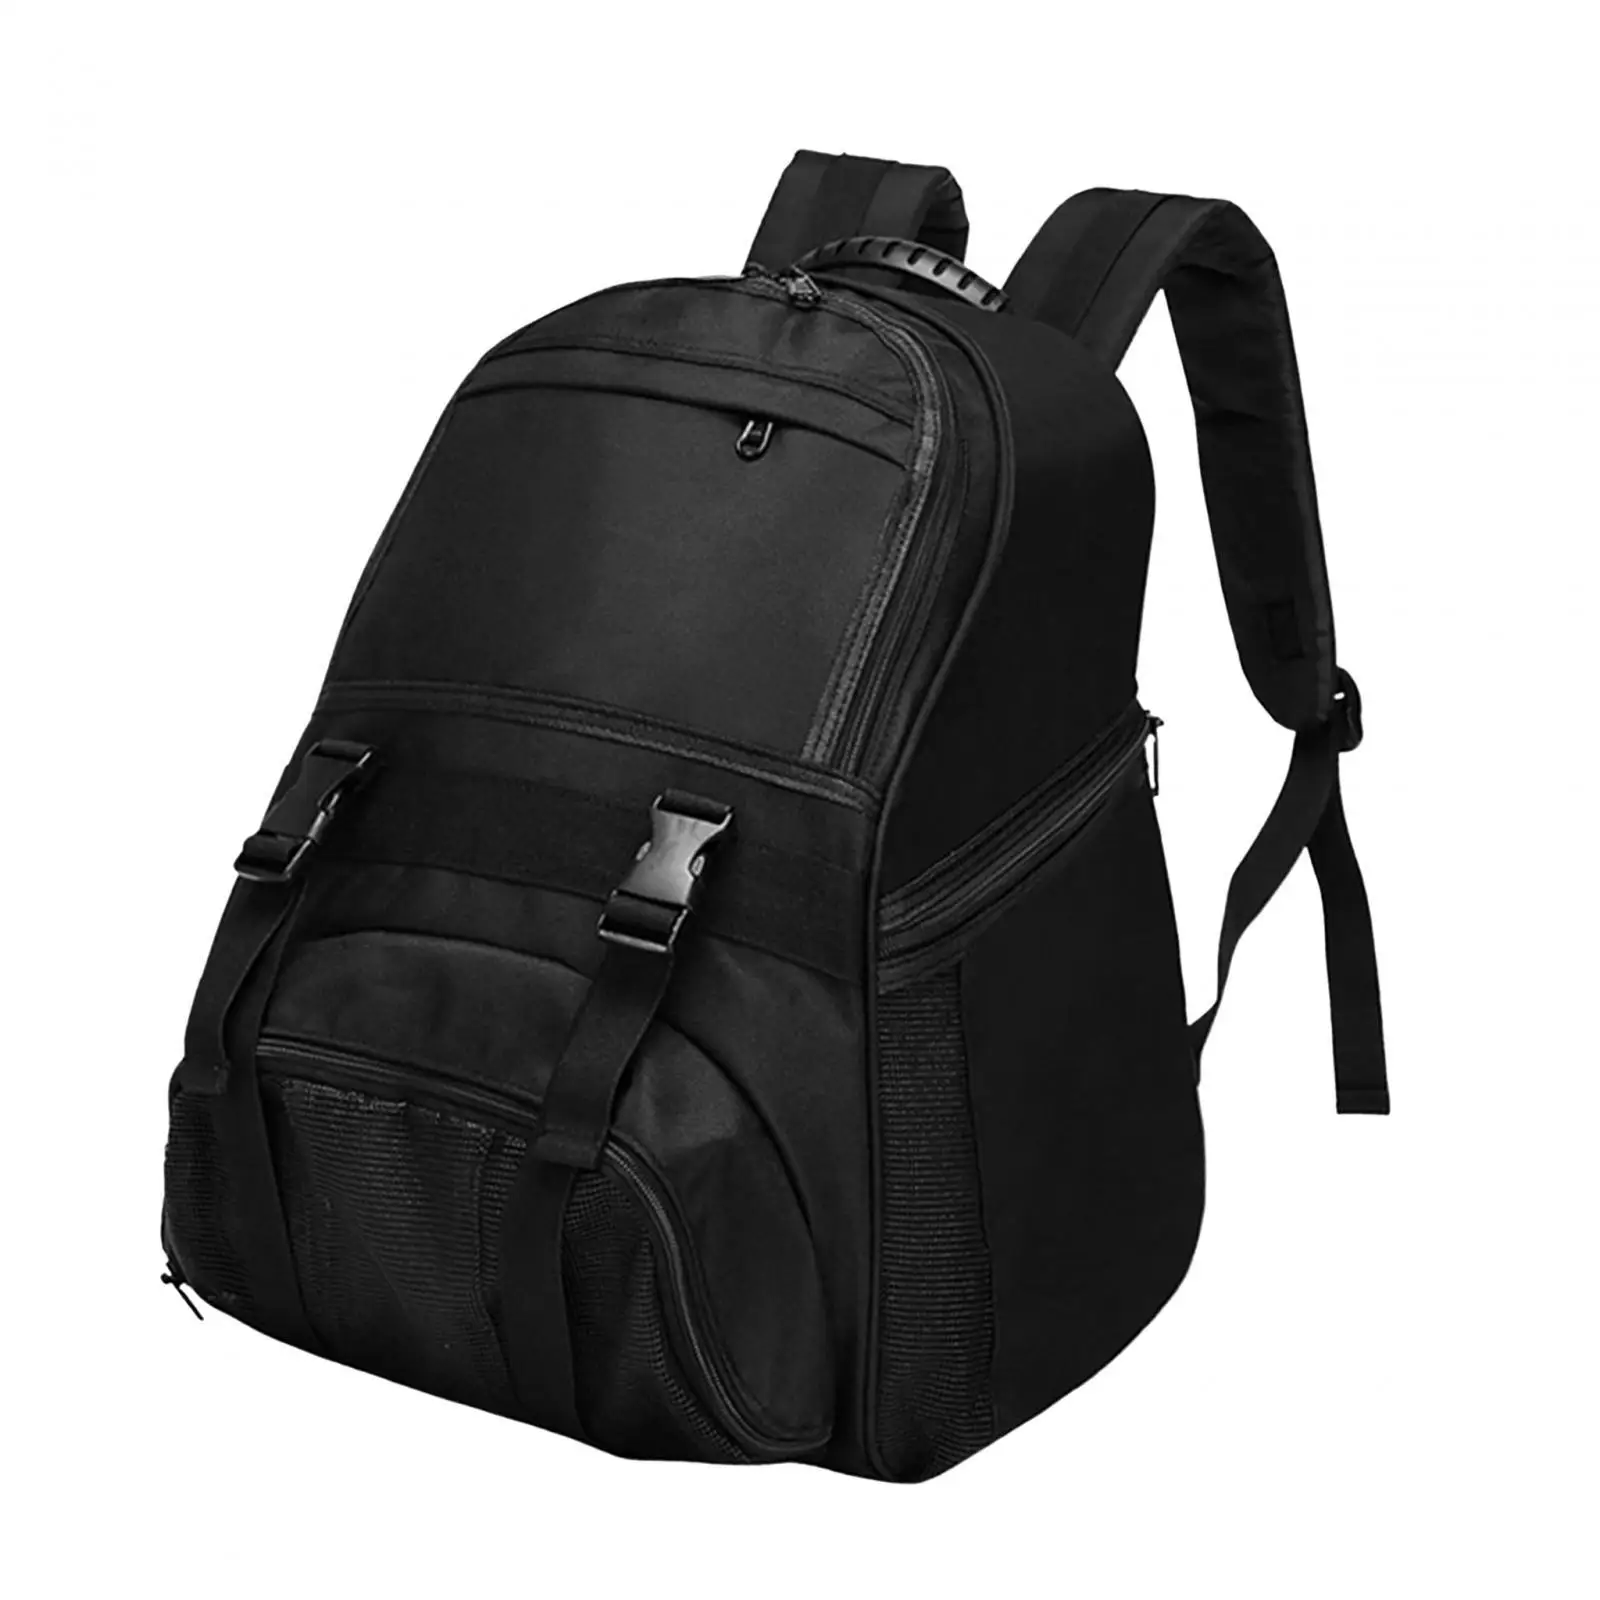 Basketball Carrying Backpack Bag Football Bag Storage Bag Single Ball Bag for Basketball Rugby Ball Football Volleyball